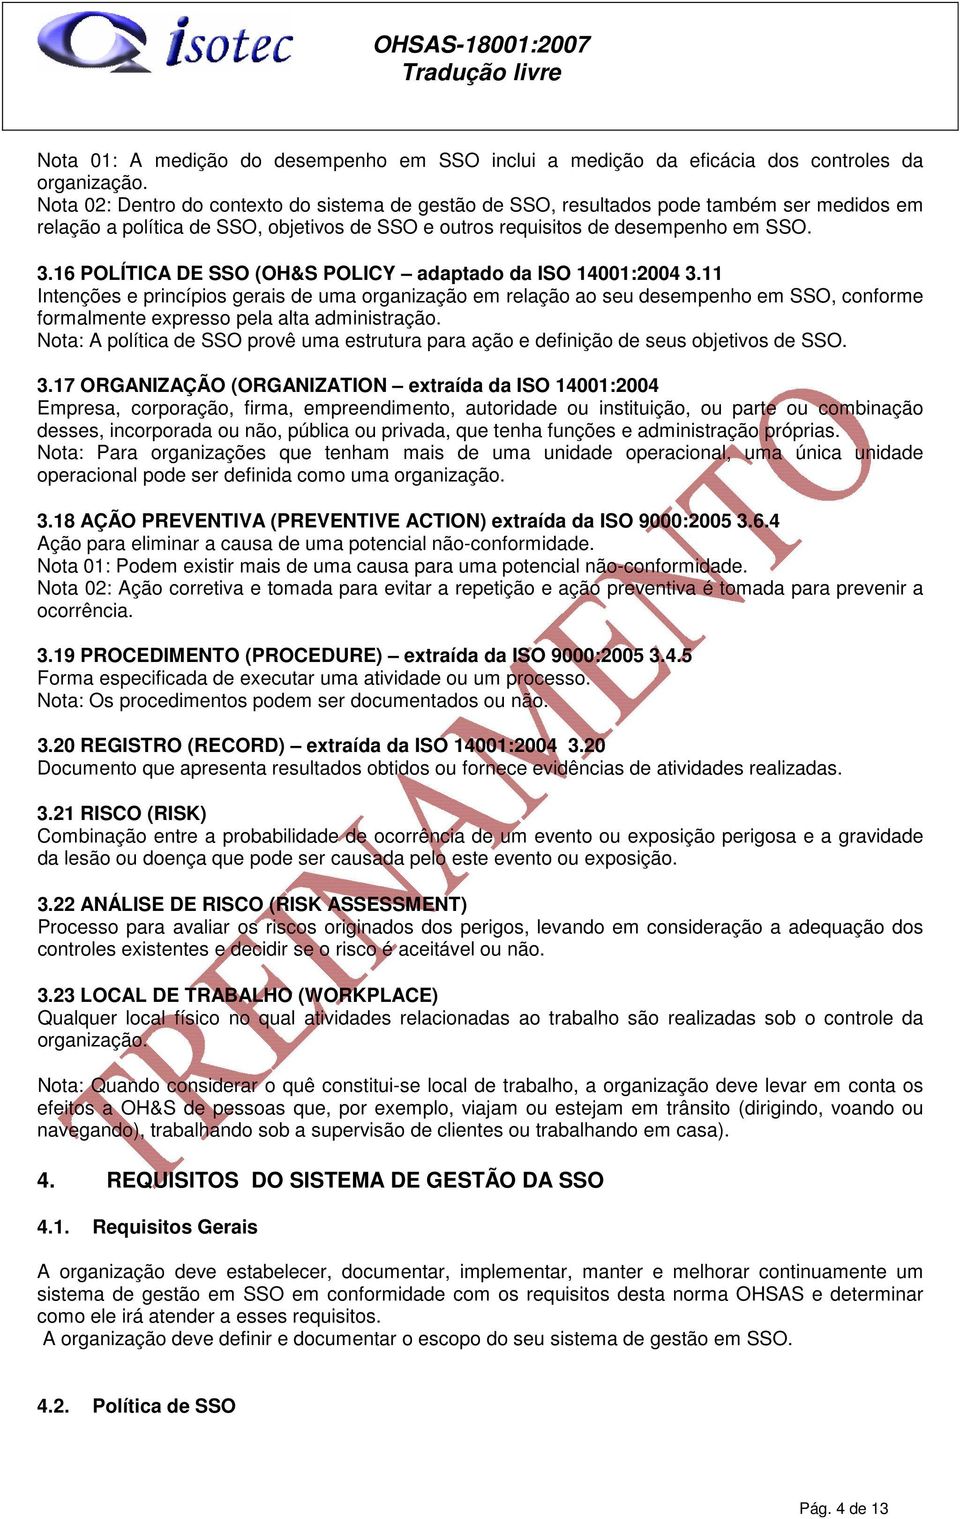 16 POLÍTICA DE SSO (OH&S POLICY adaptado da ISO 14001:2004 3.